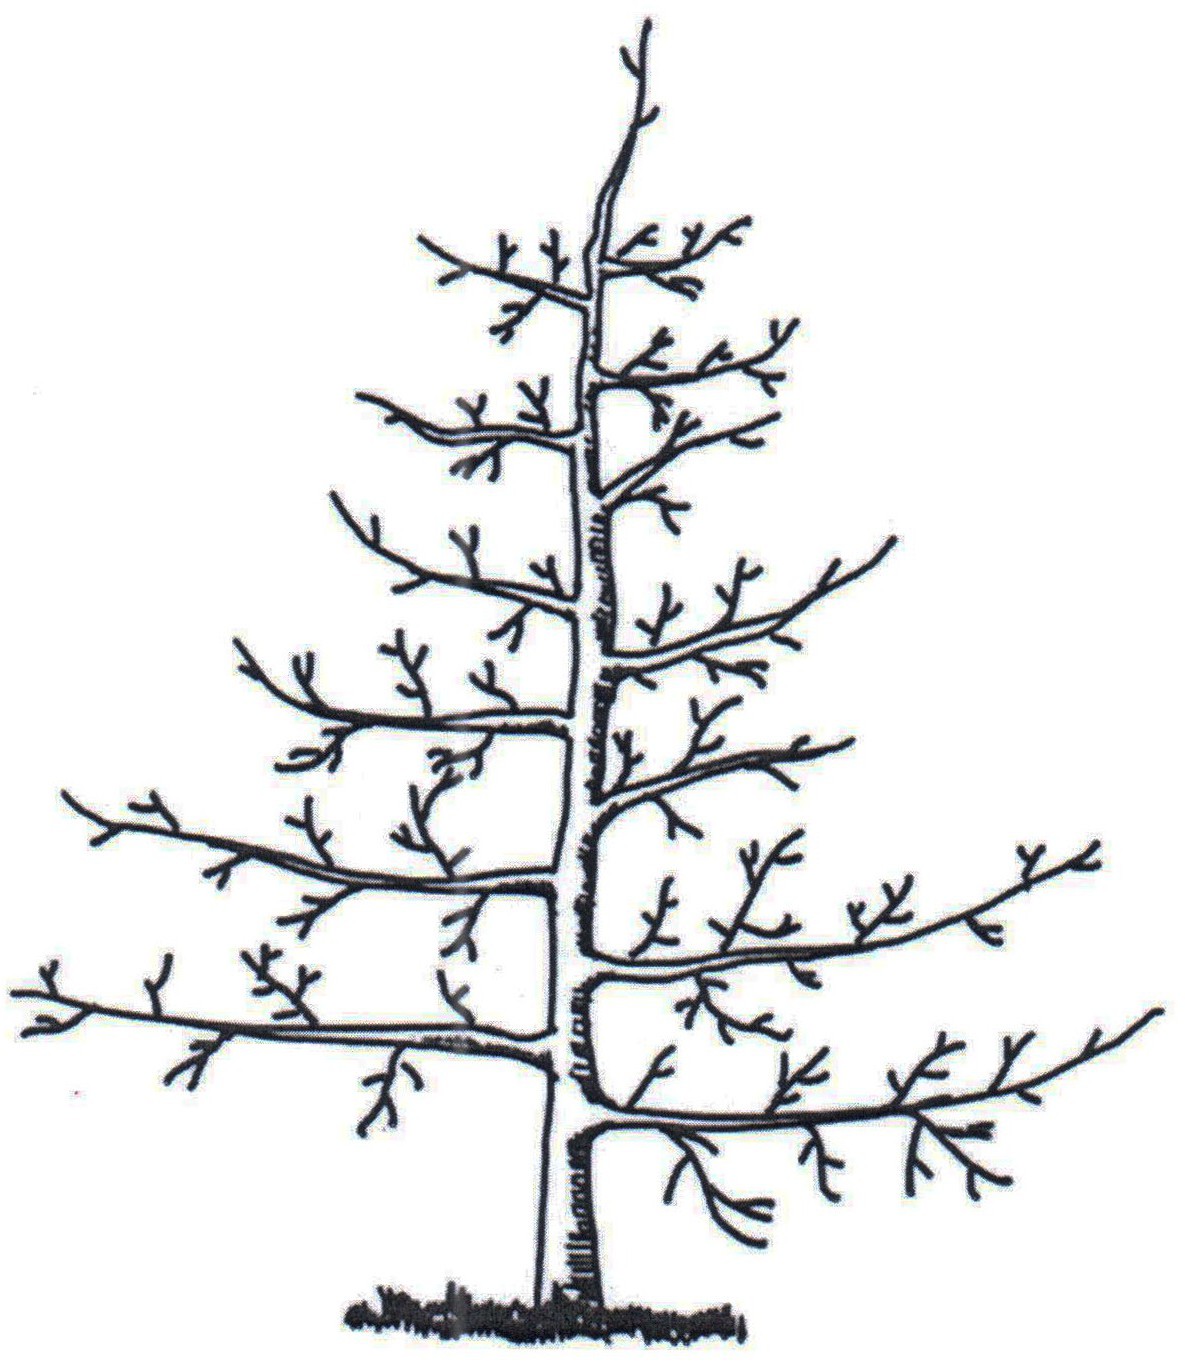 苍溪雪梨自由纺锤形树形及其整形方法